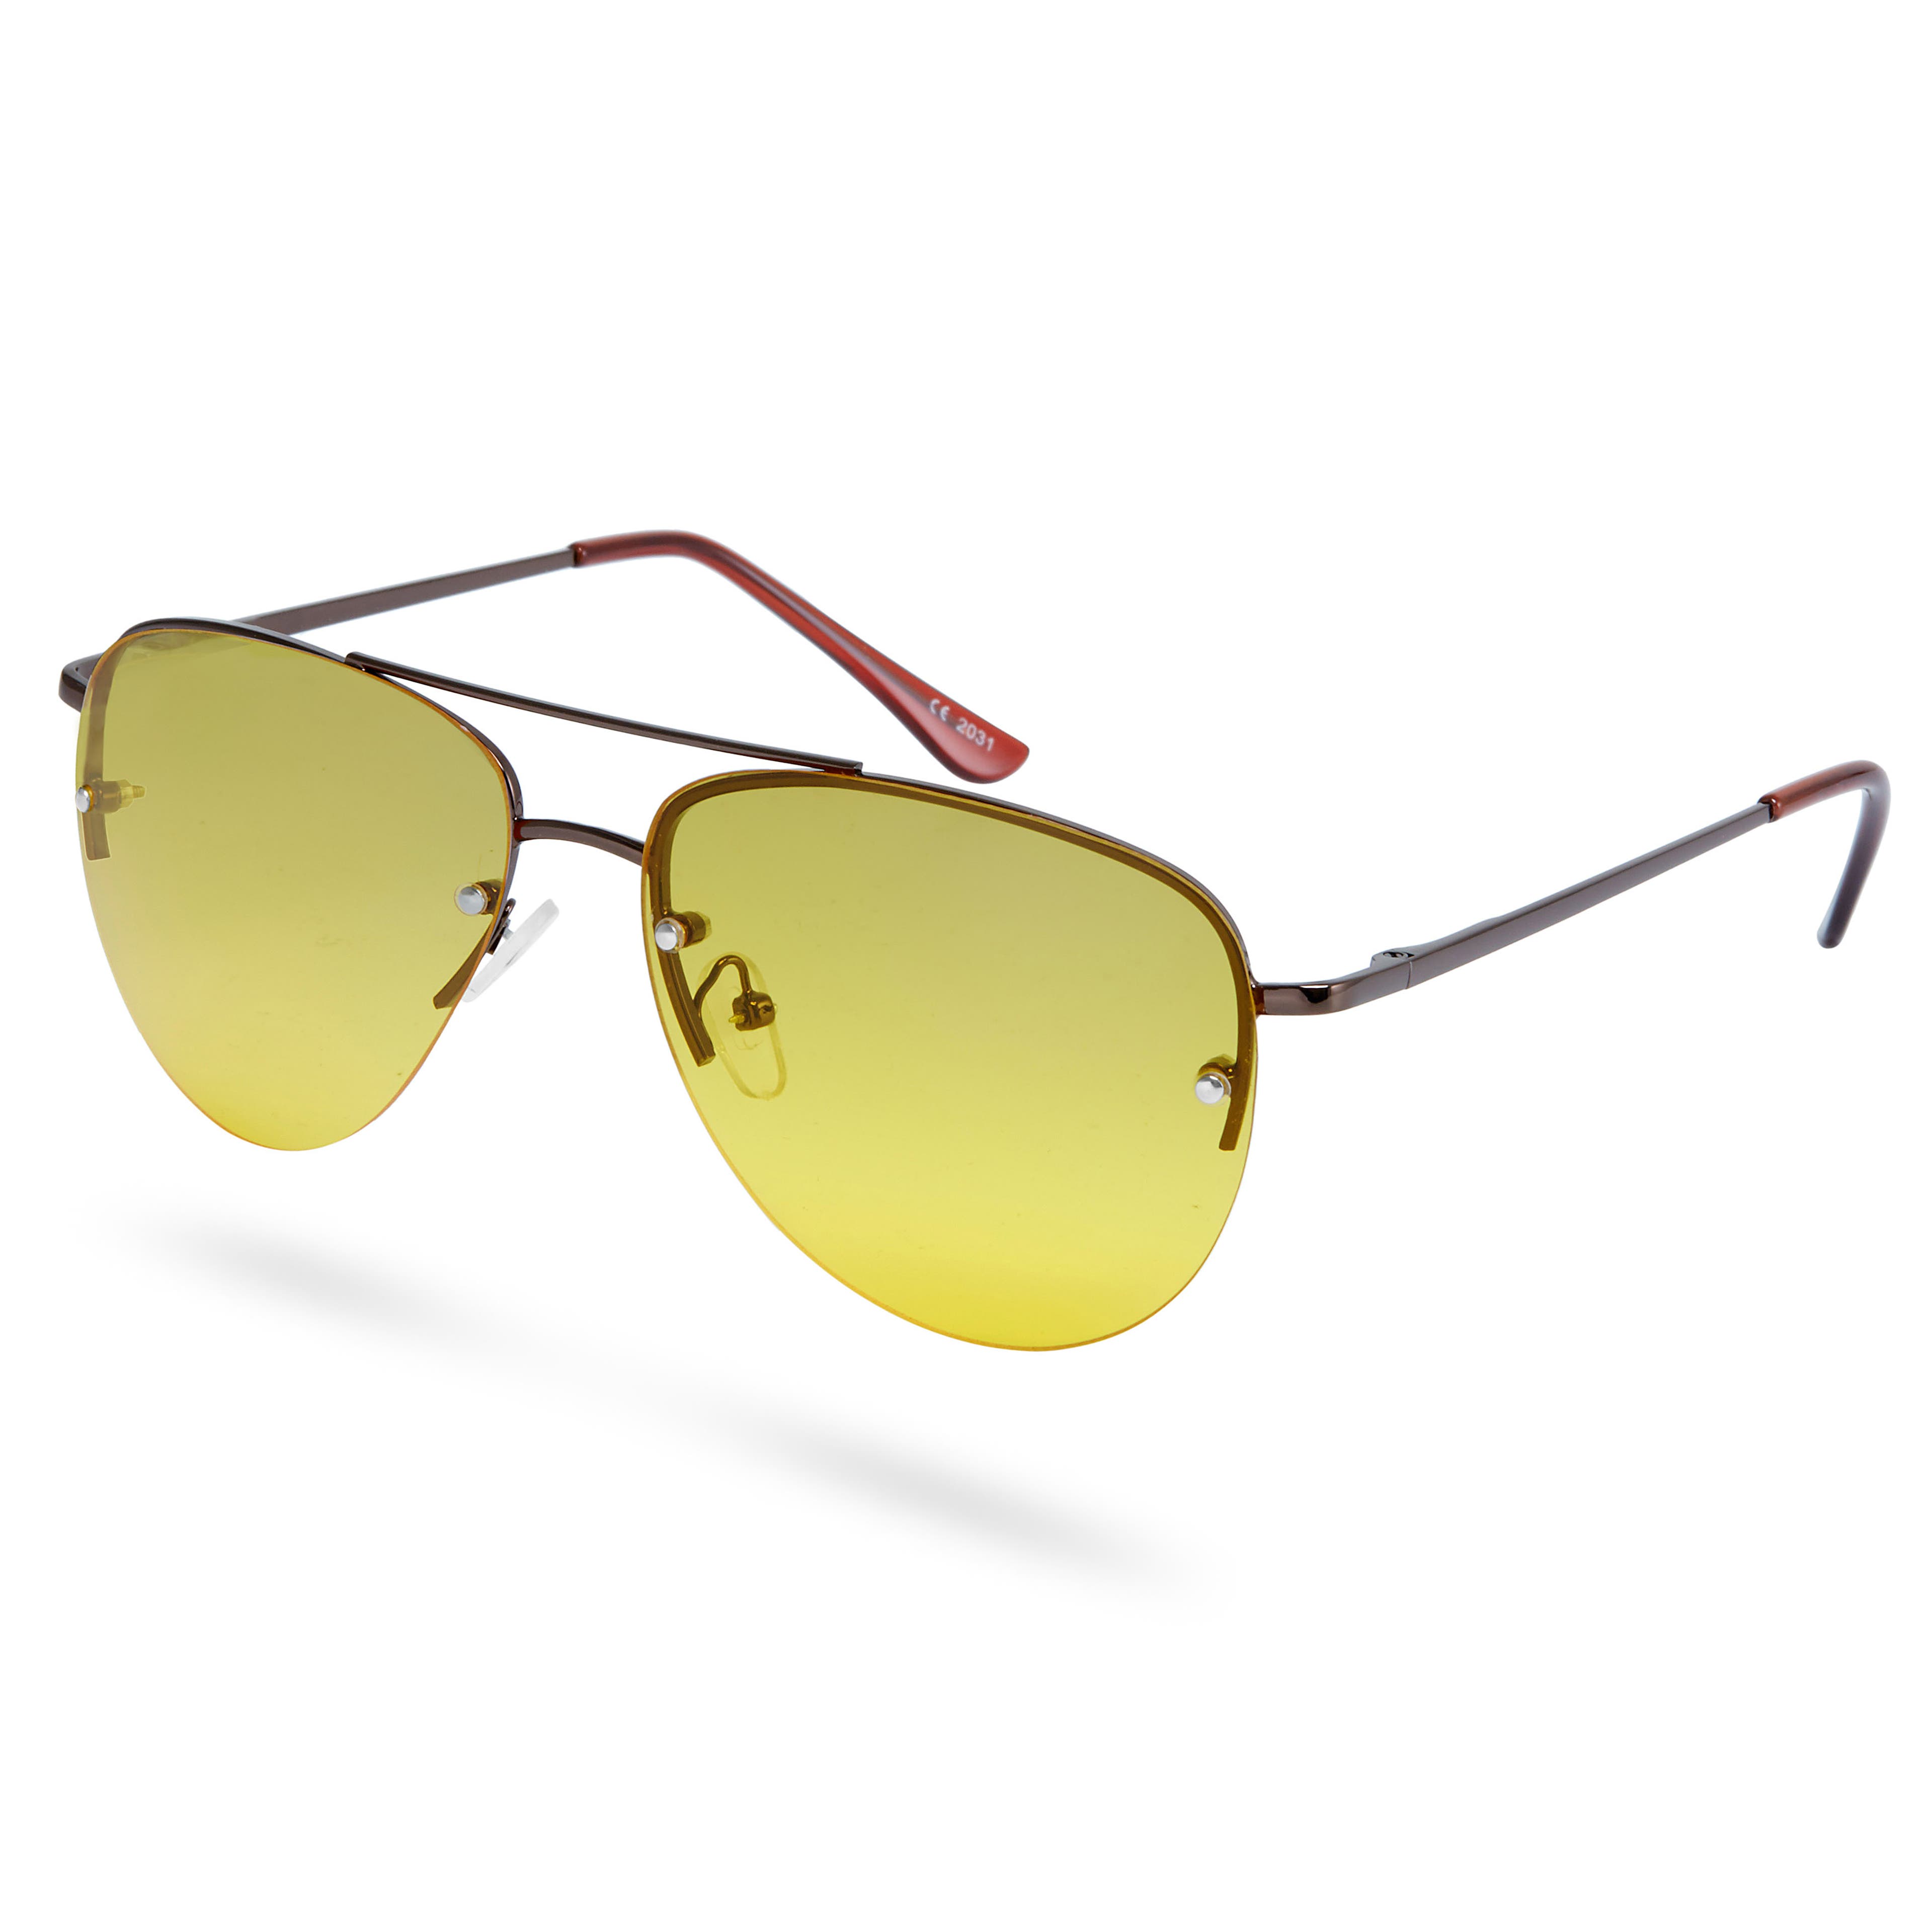 Авиаторски слънчеви очила в кафяво и жълто